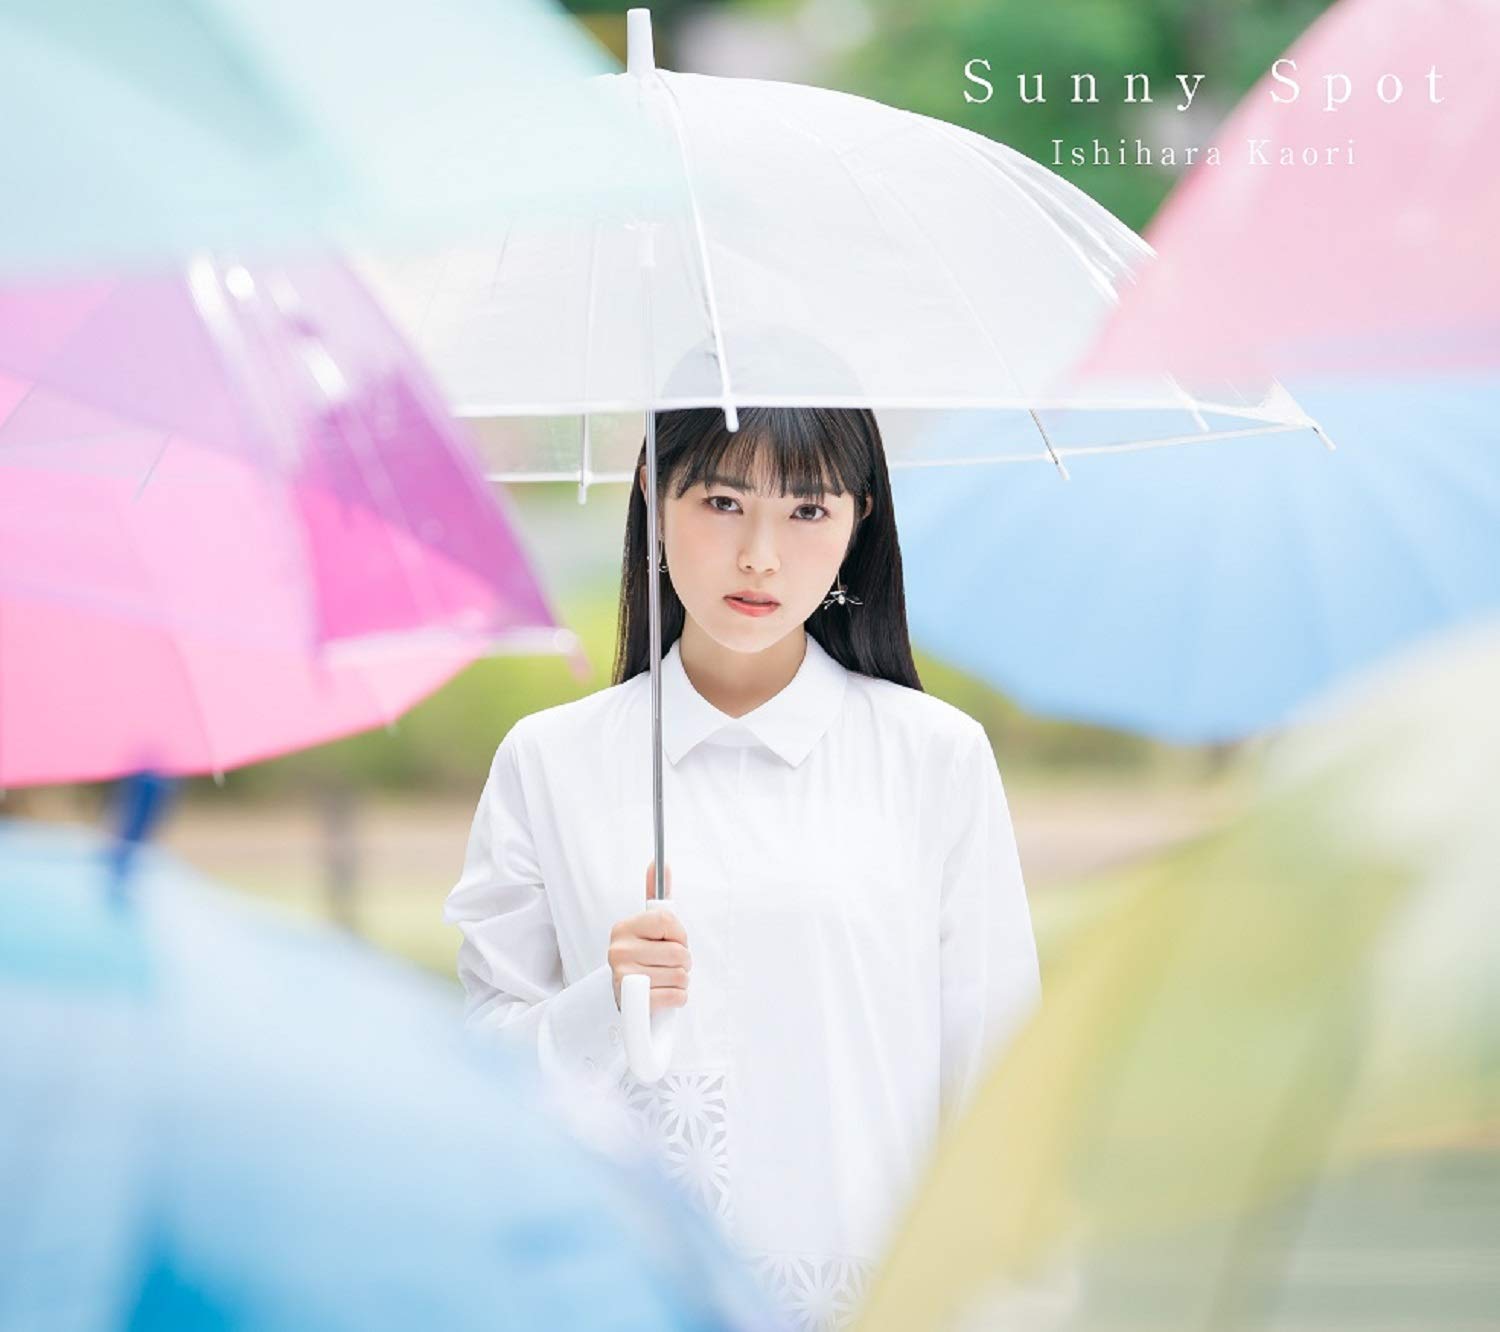 石原夏織 (Kaori Ishihara) - Sunny Spot [Mora FLAC 24bit/96kHz]